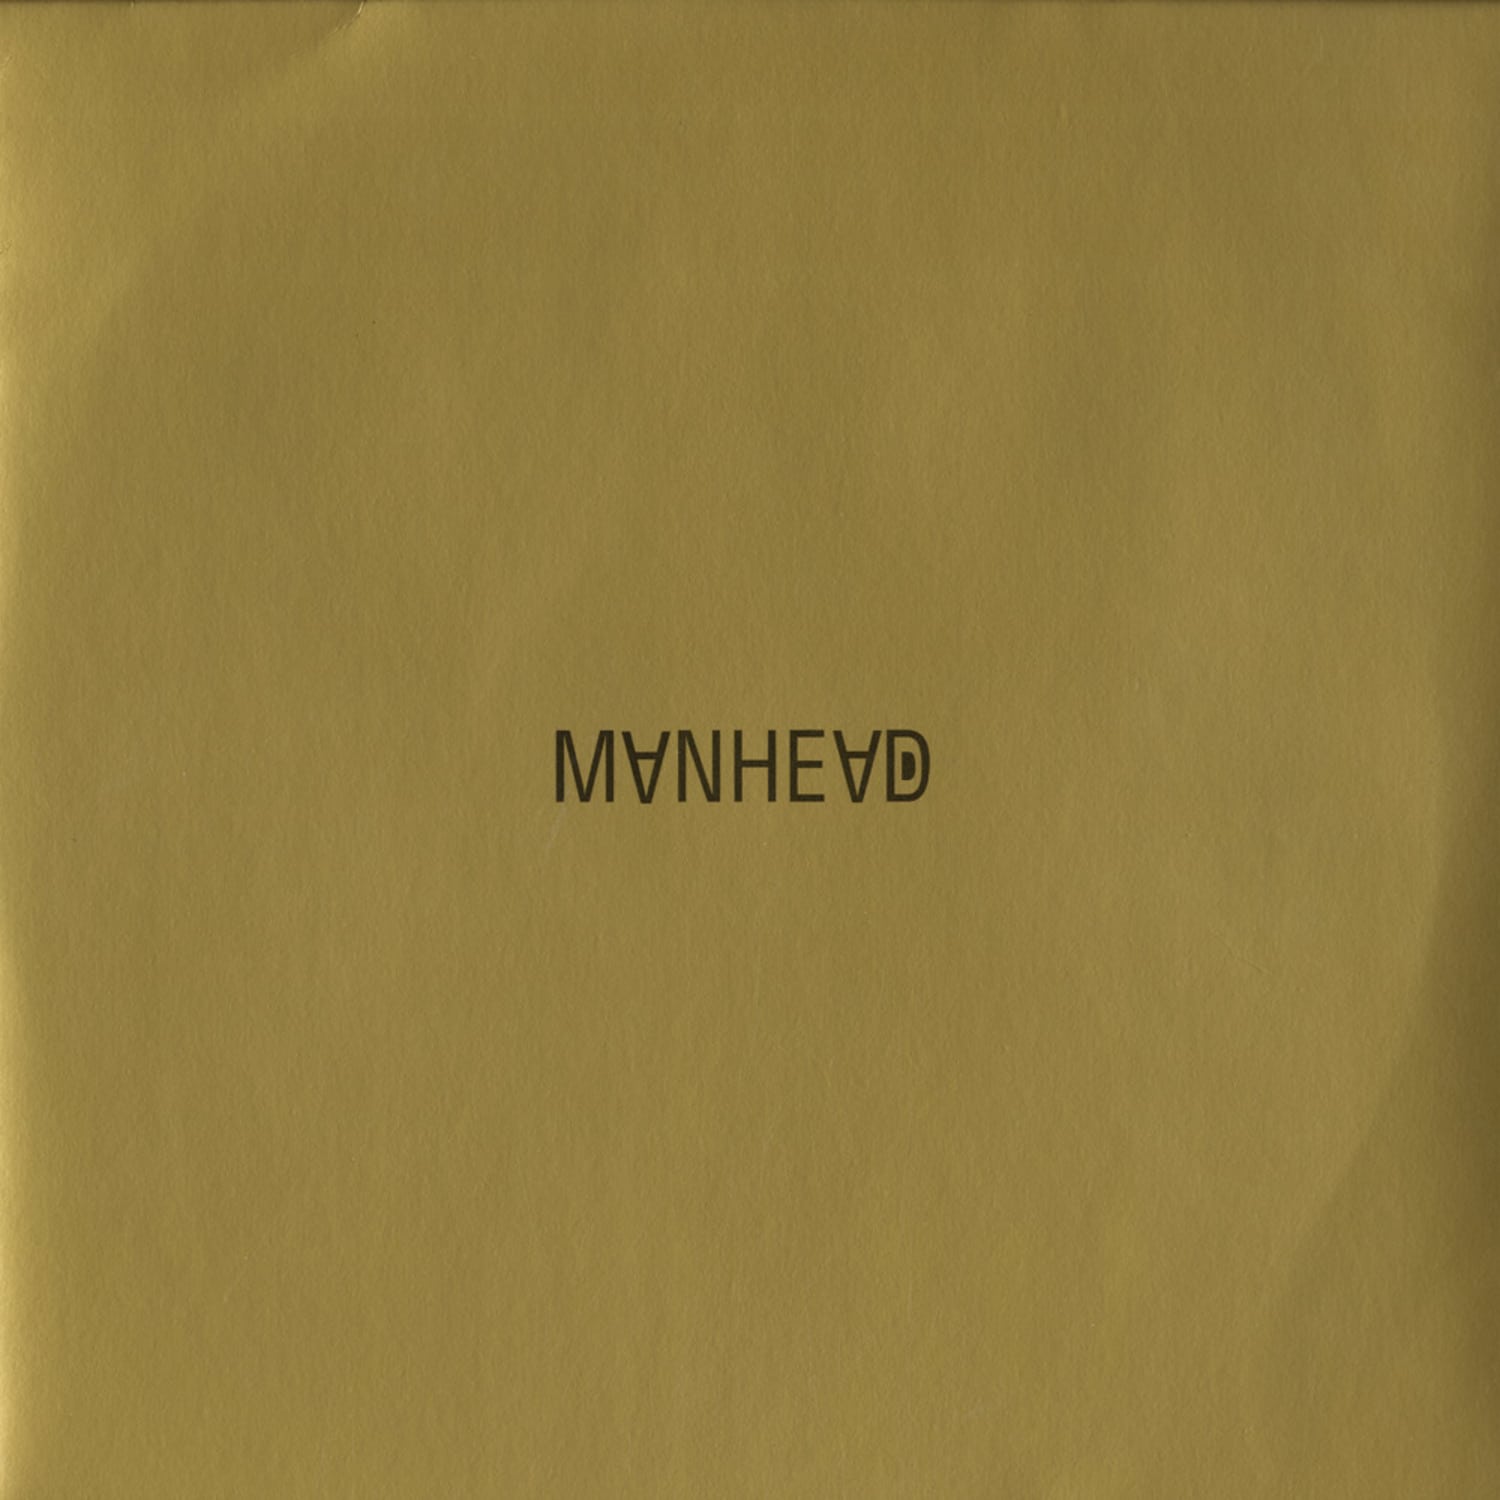 Manhead - MANHEAD ALBUM 